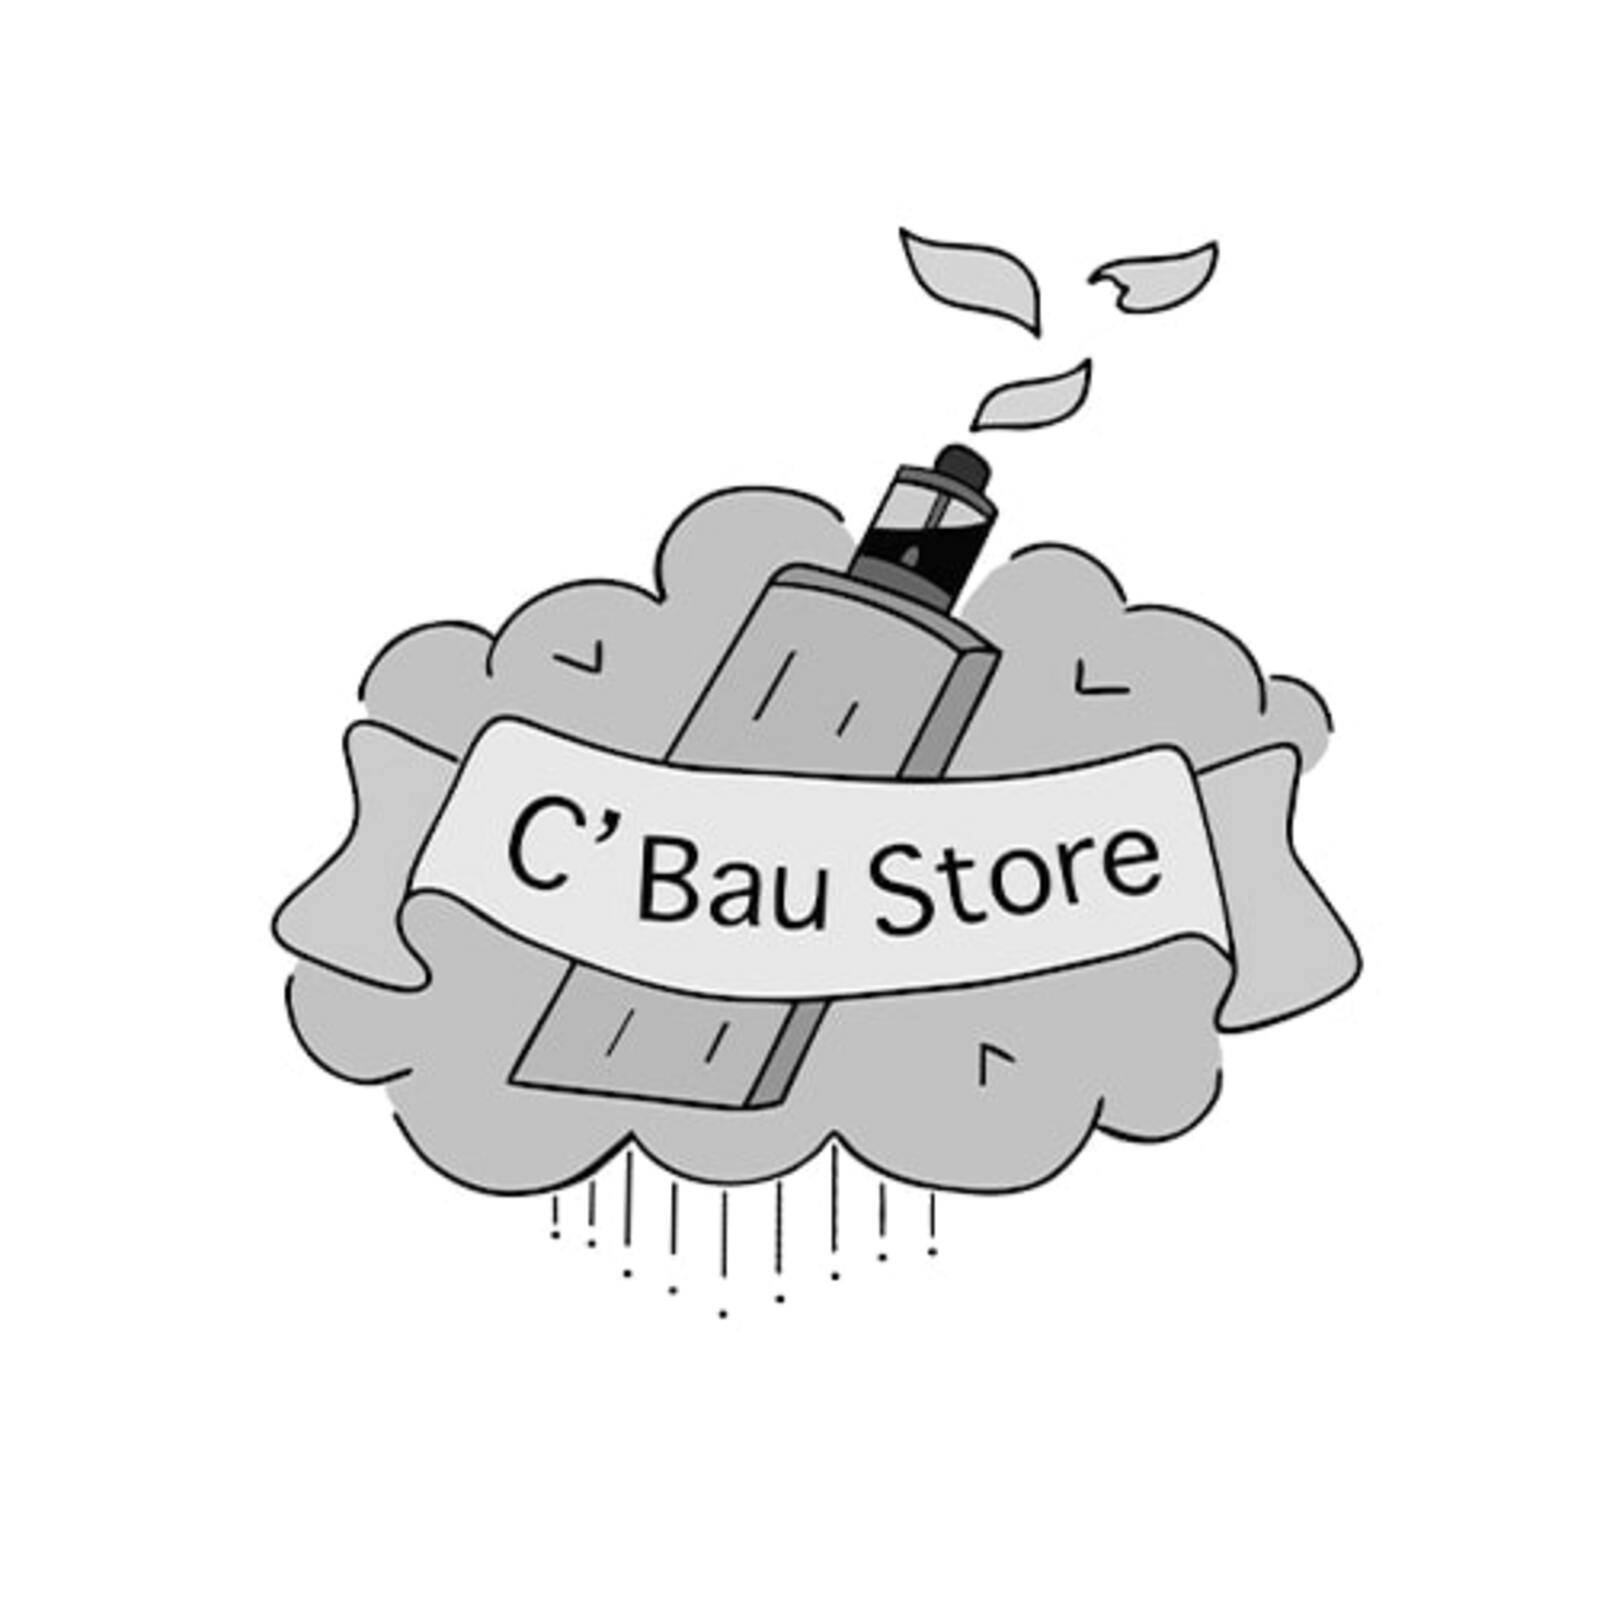 C'Bau Store